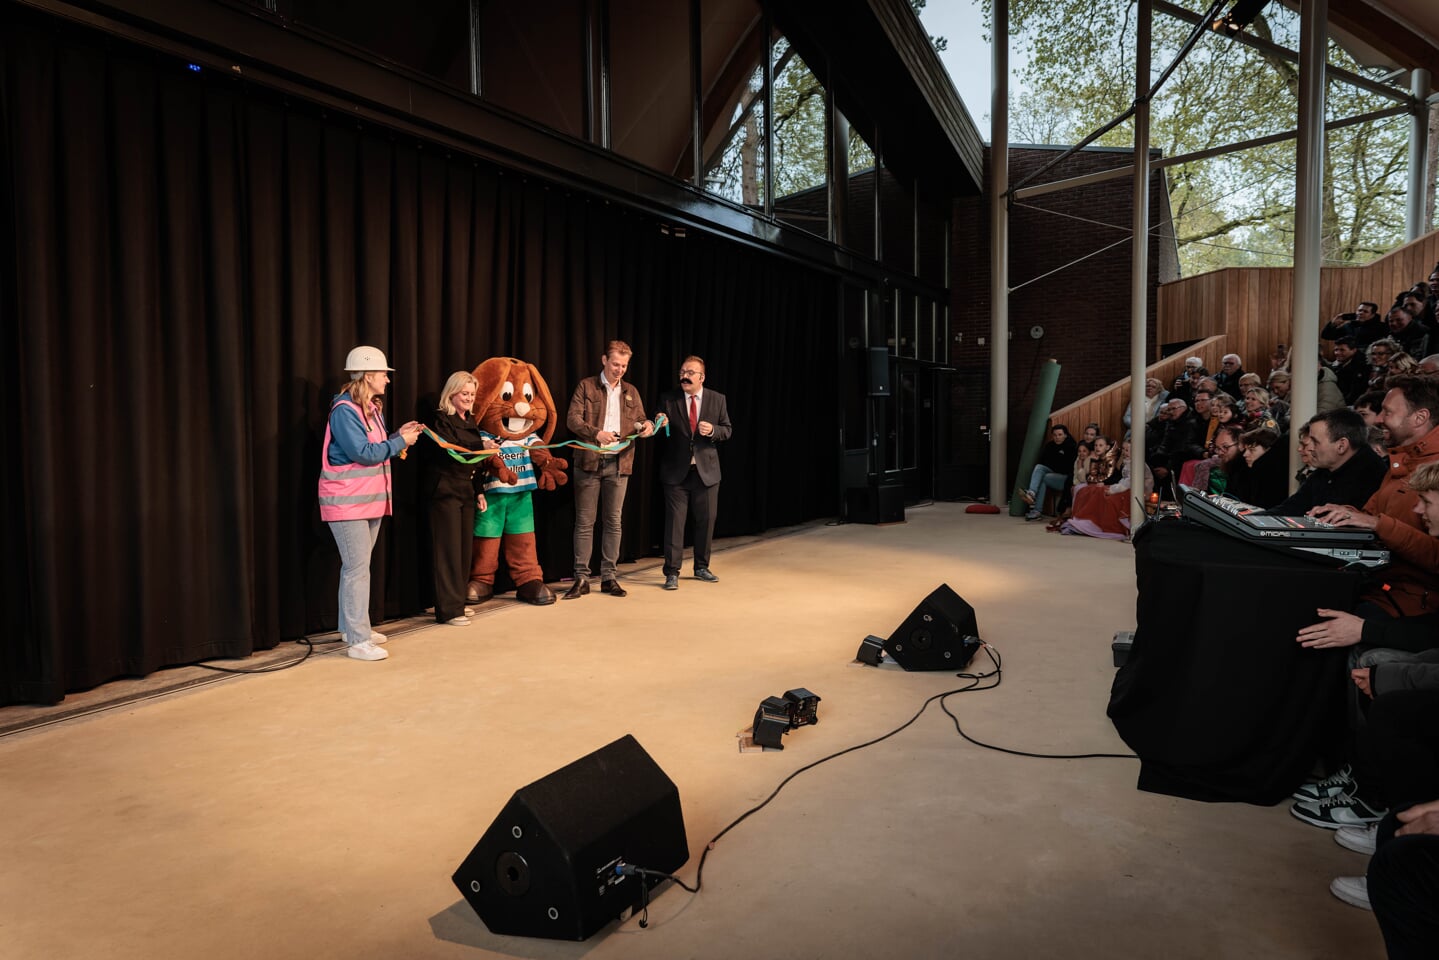 Naast de mascotte Bultje, Johanneke Hagedoorn en Gerrit-Jan Hagedoorn (eigenaren van Beerze Bulten) die de openingshandeling van het nieuwe buitentheater verrichten.